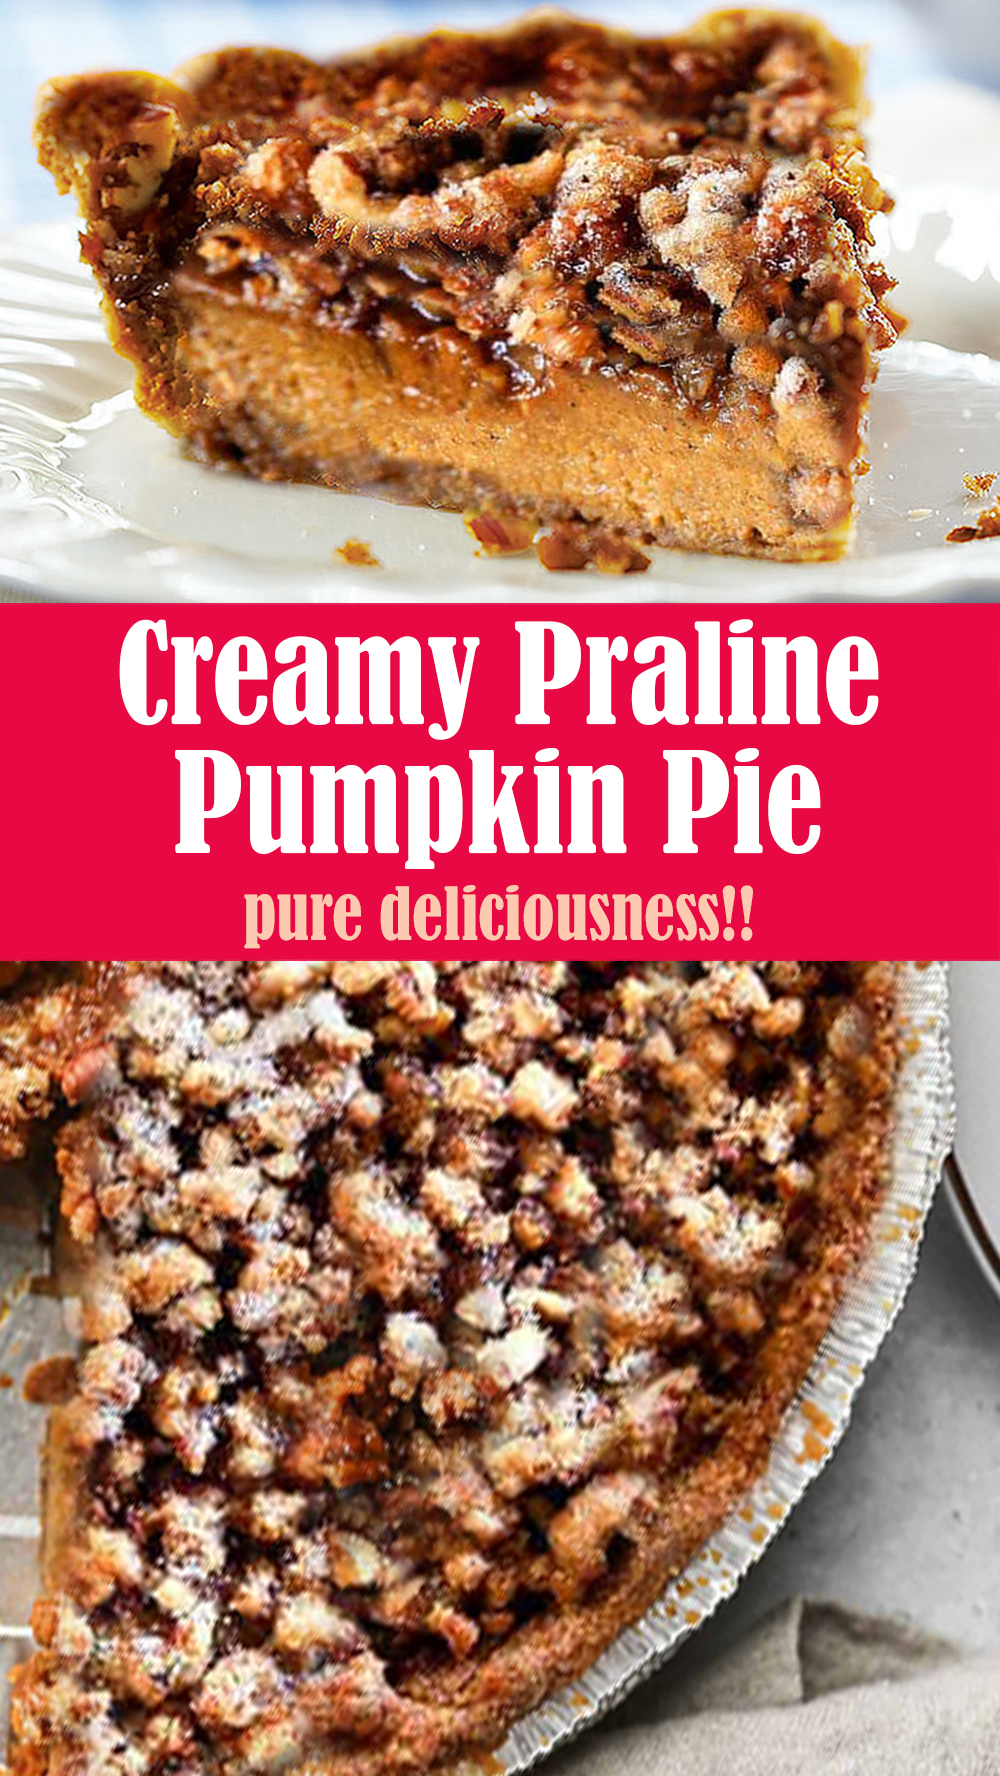 Creamy Praline Pumpkin Pie